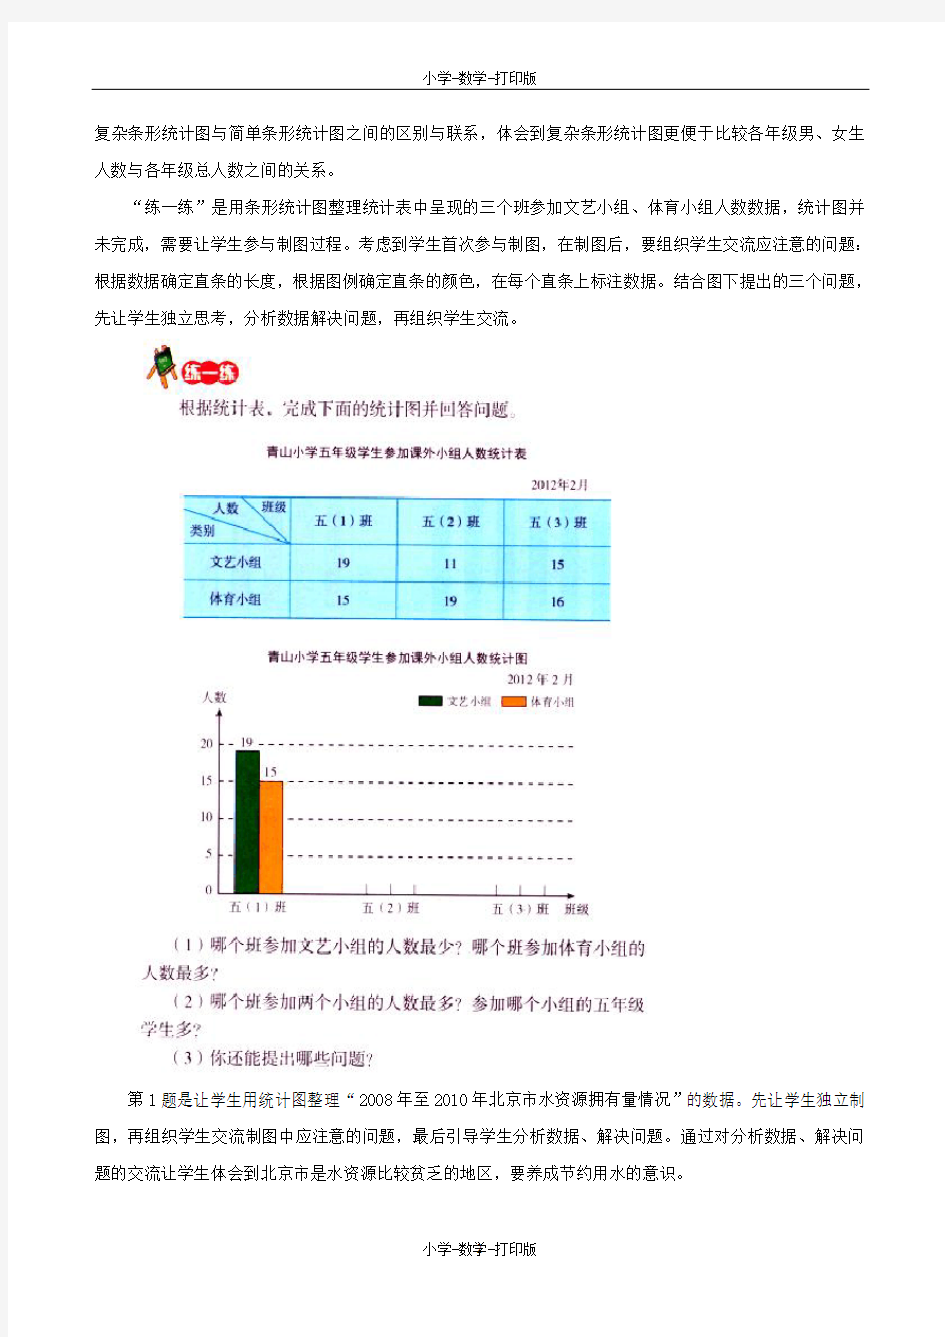 北京版-数学-五年级上册-《统计图》教材分析